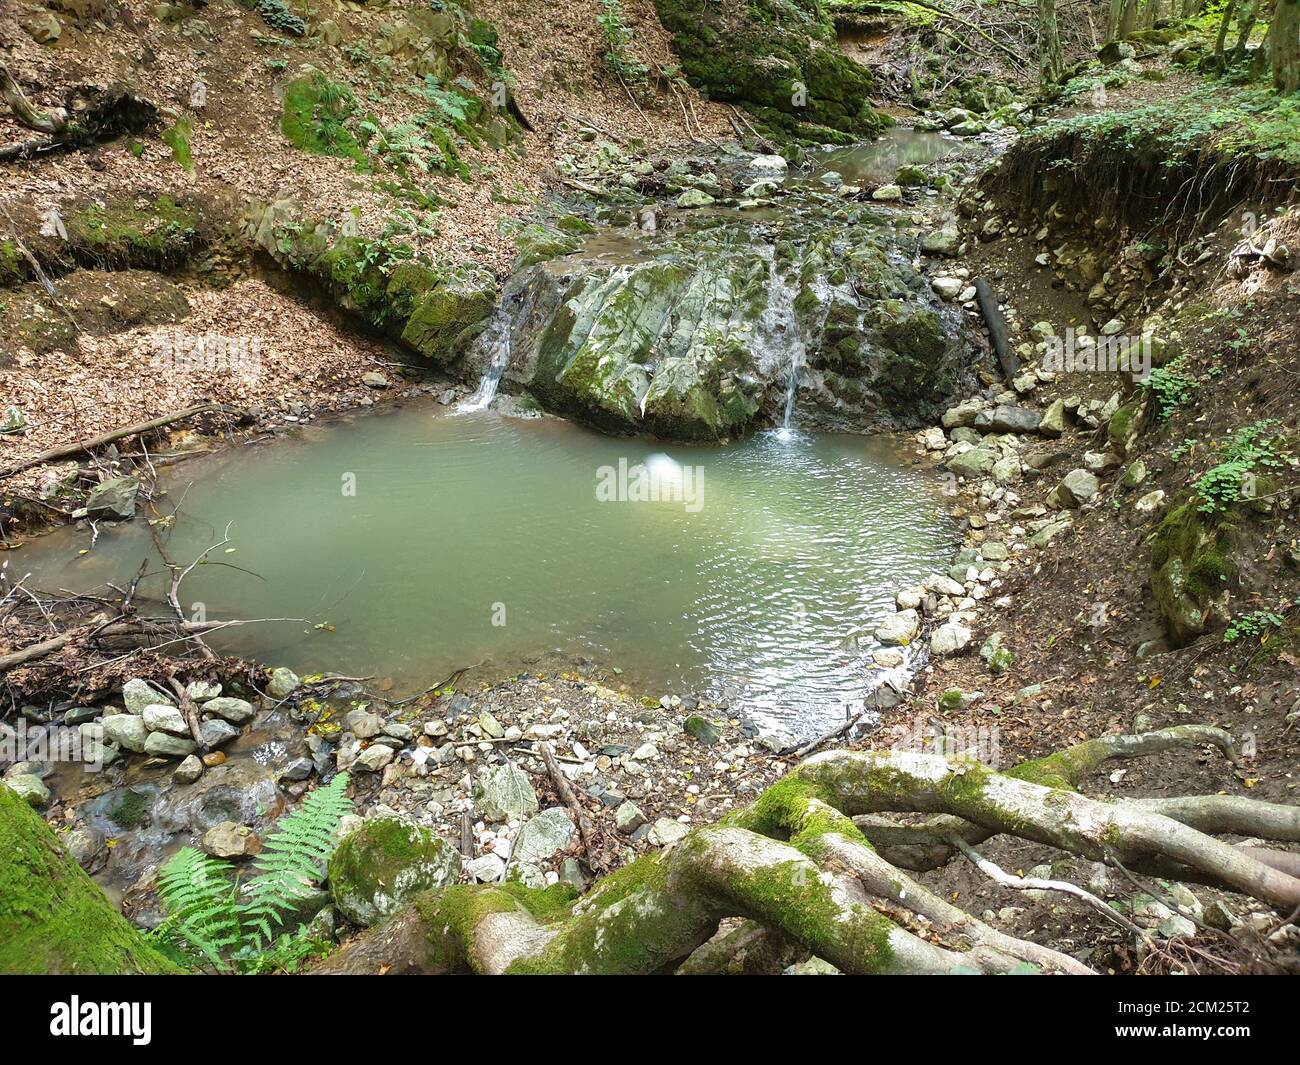 Cheile Borzesti Schluchten natürlichen Flussgebiet. Wasserfall auf kleinen Fluss in dichten Wald in Cluj County, Siebenbürgen, Rumänien. Wasserfall in Cheile Borzest Stockfoto